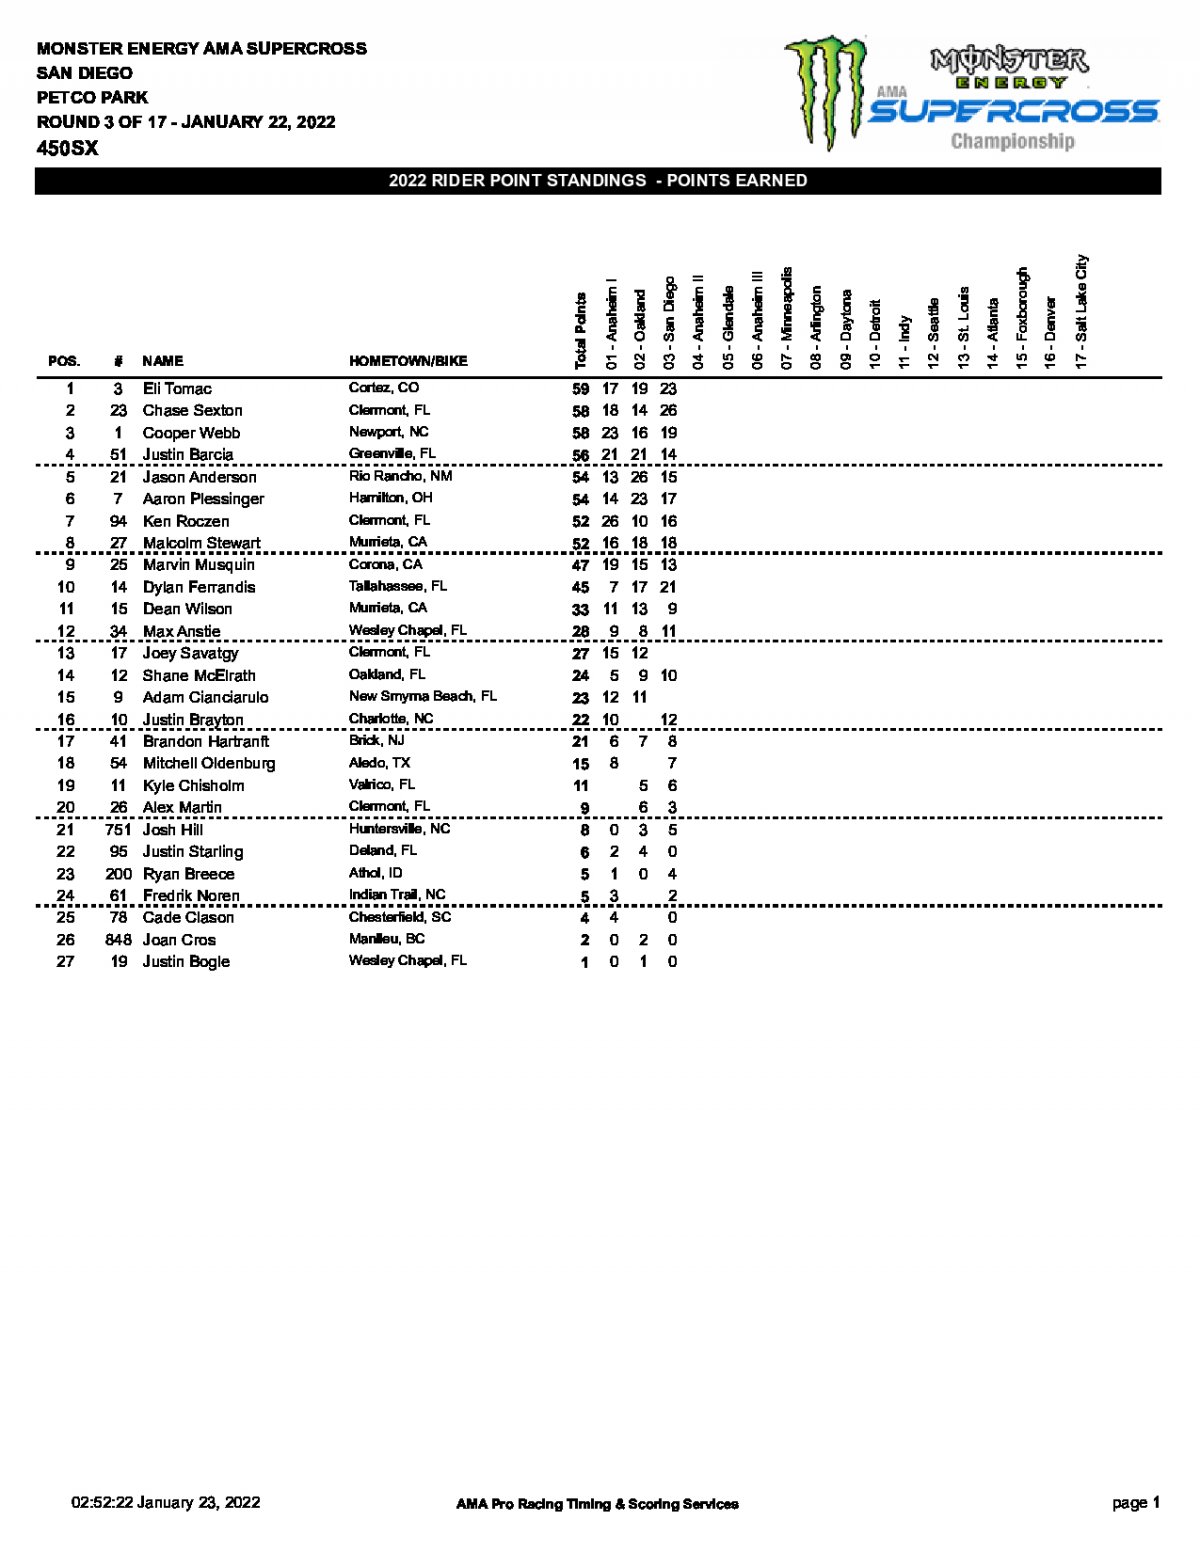 Положение в чемпионате AMA Supercross 450SX по итогам 3 этапа